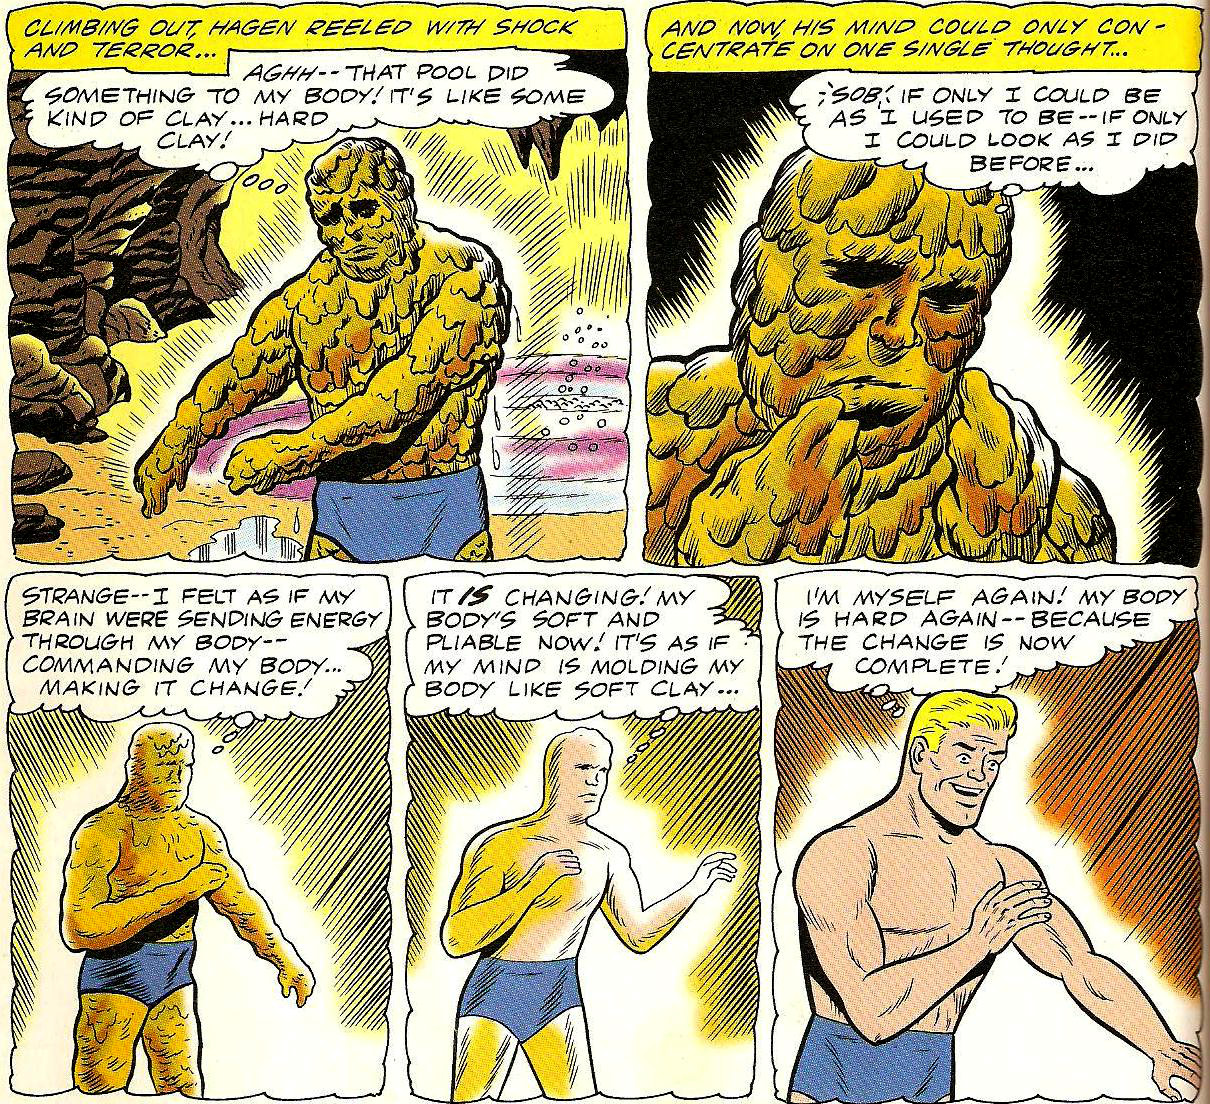 From Detective Comics (Vol. 1) #298 (1961)